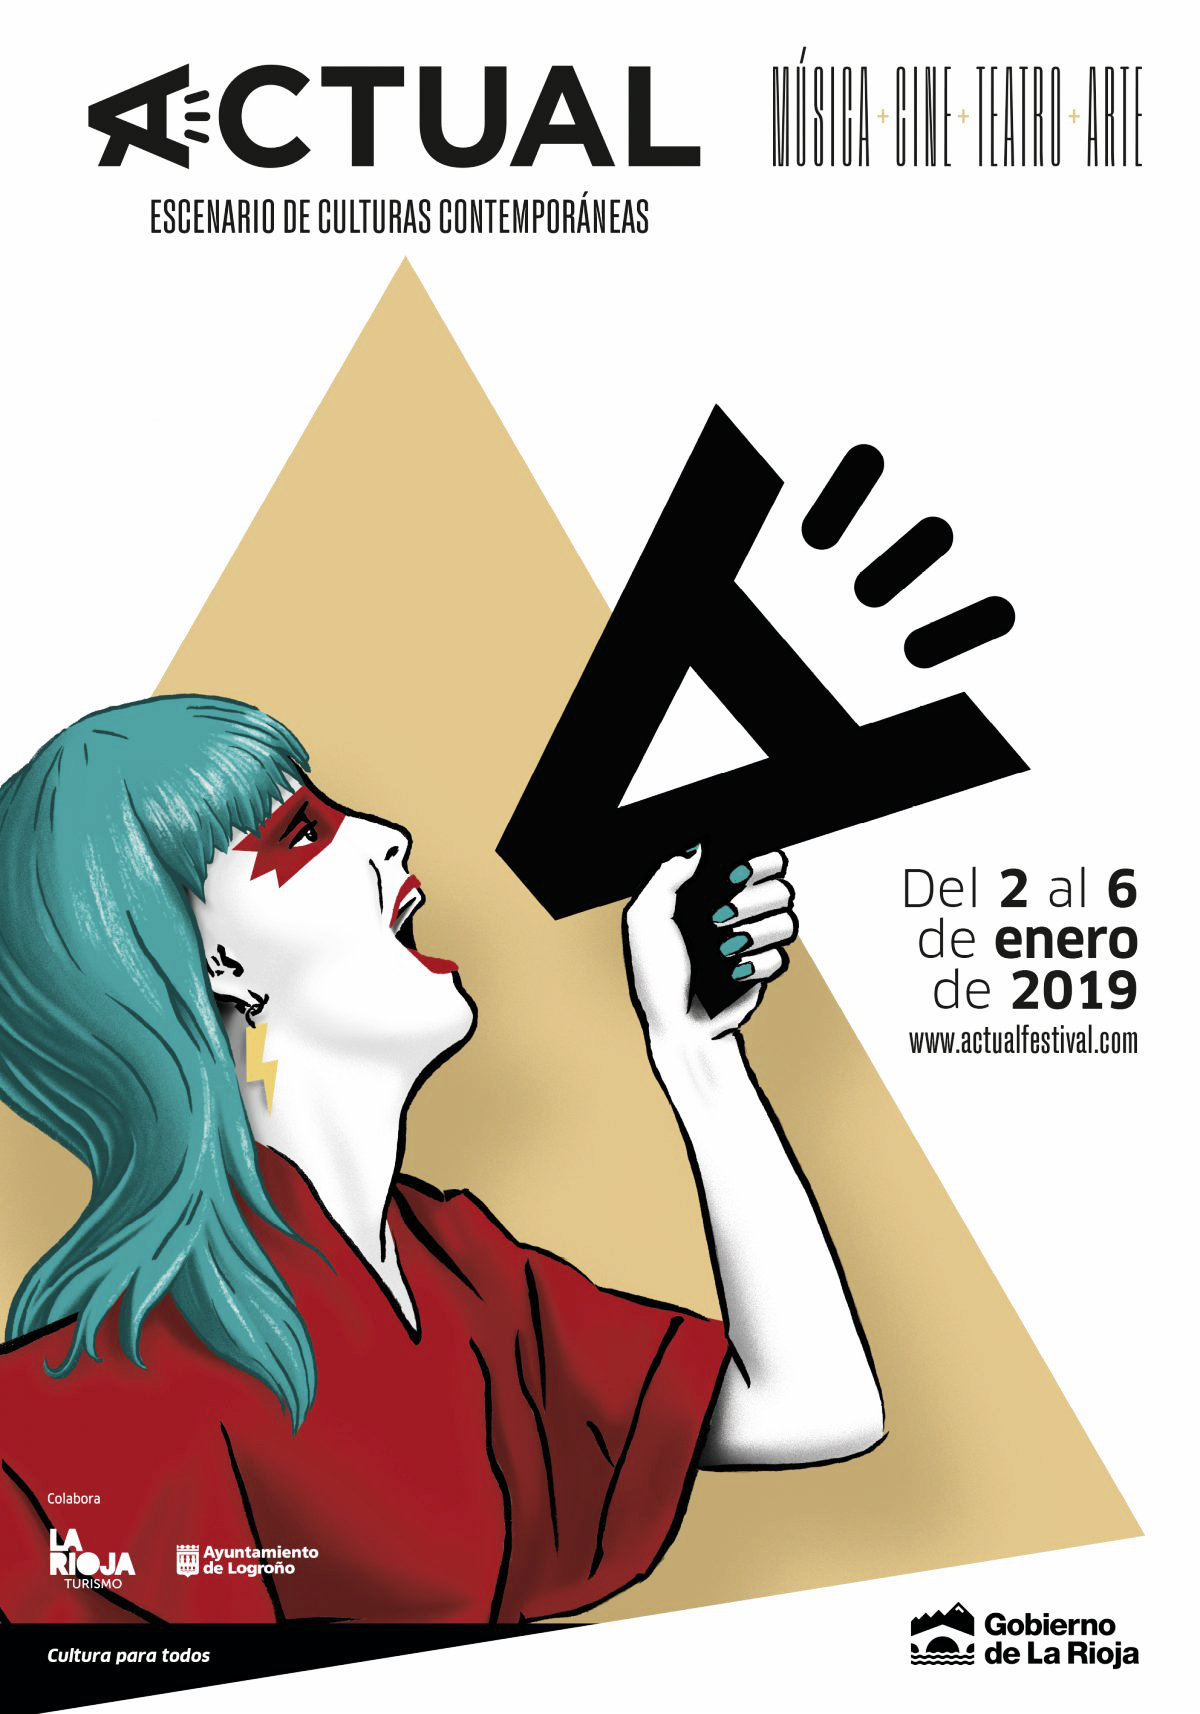 La 29º edición del Festival Actual de Logroño se
celebrará del 2 al 6 enero